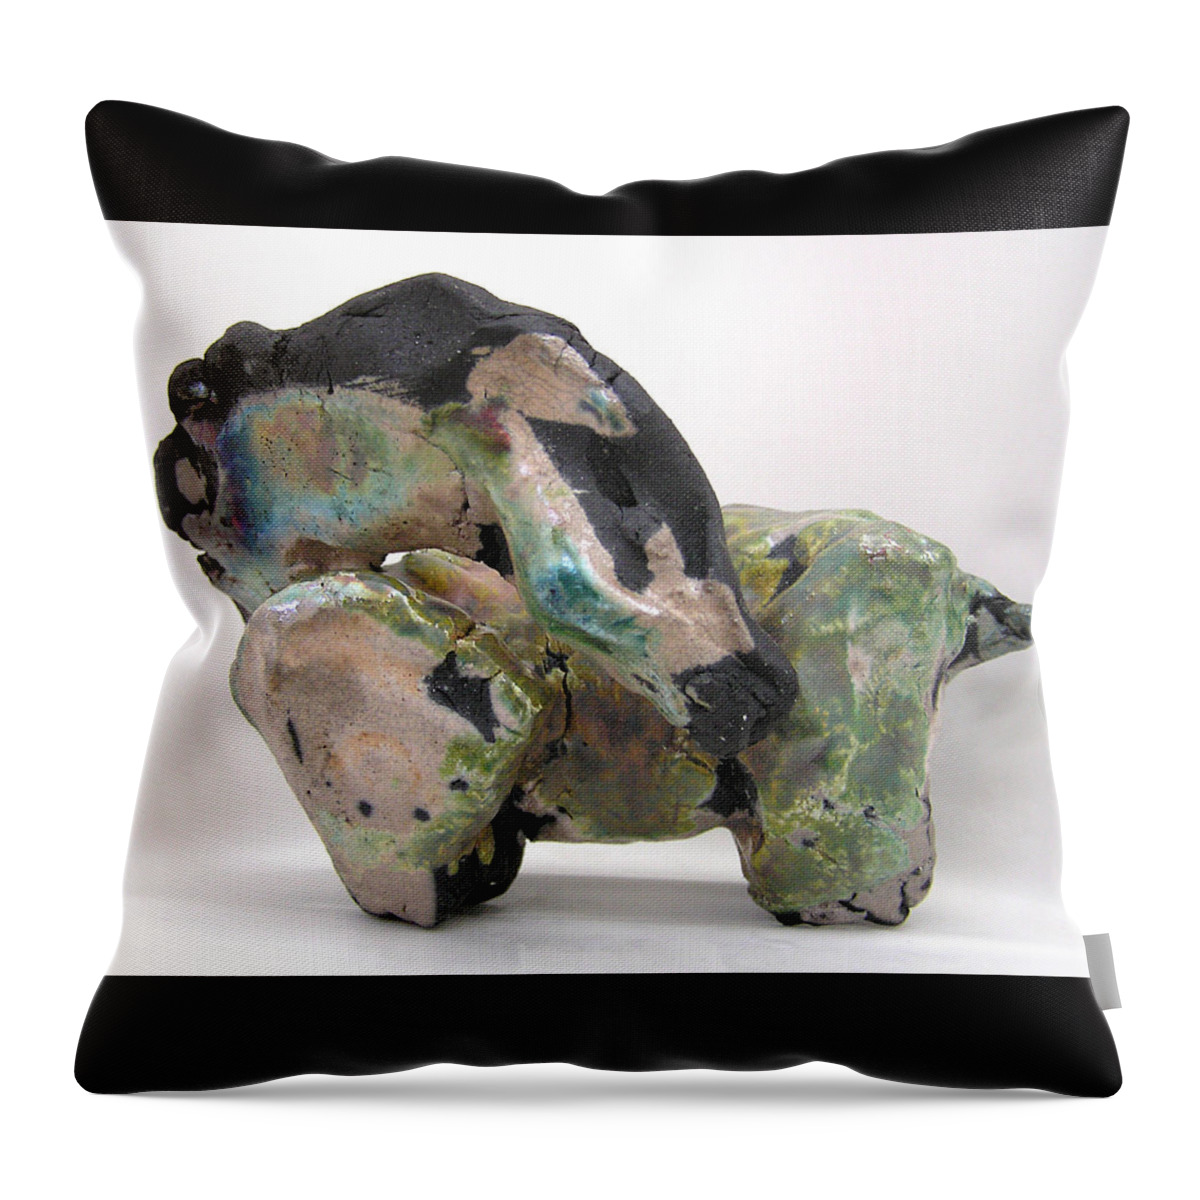 Horse Sculpture Throw Pillow featuring the photograph Raku Green by Valerie Freeman